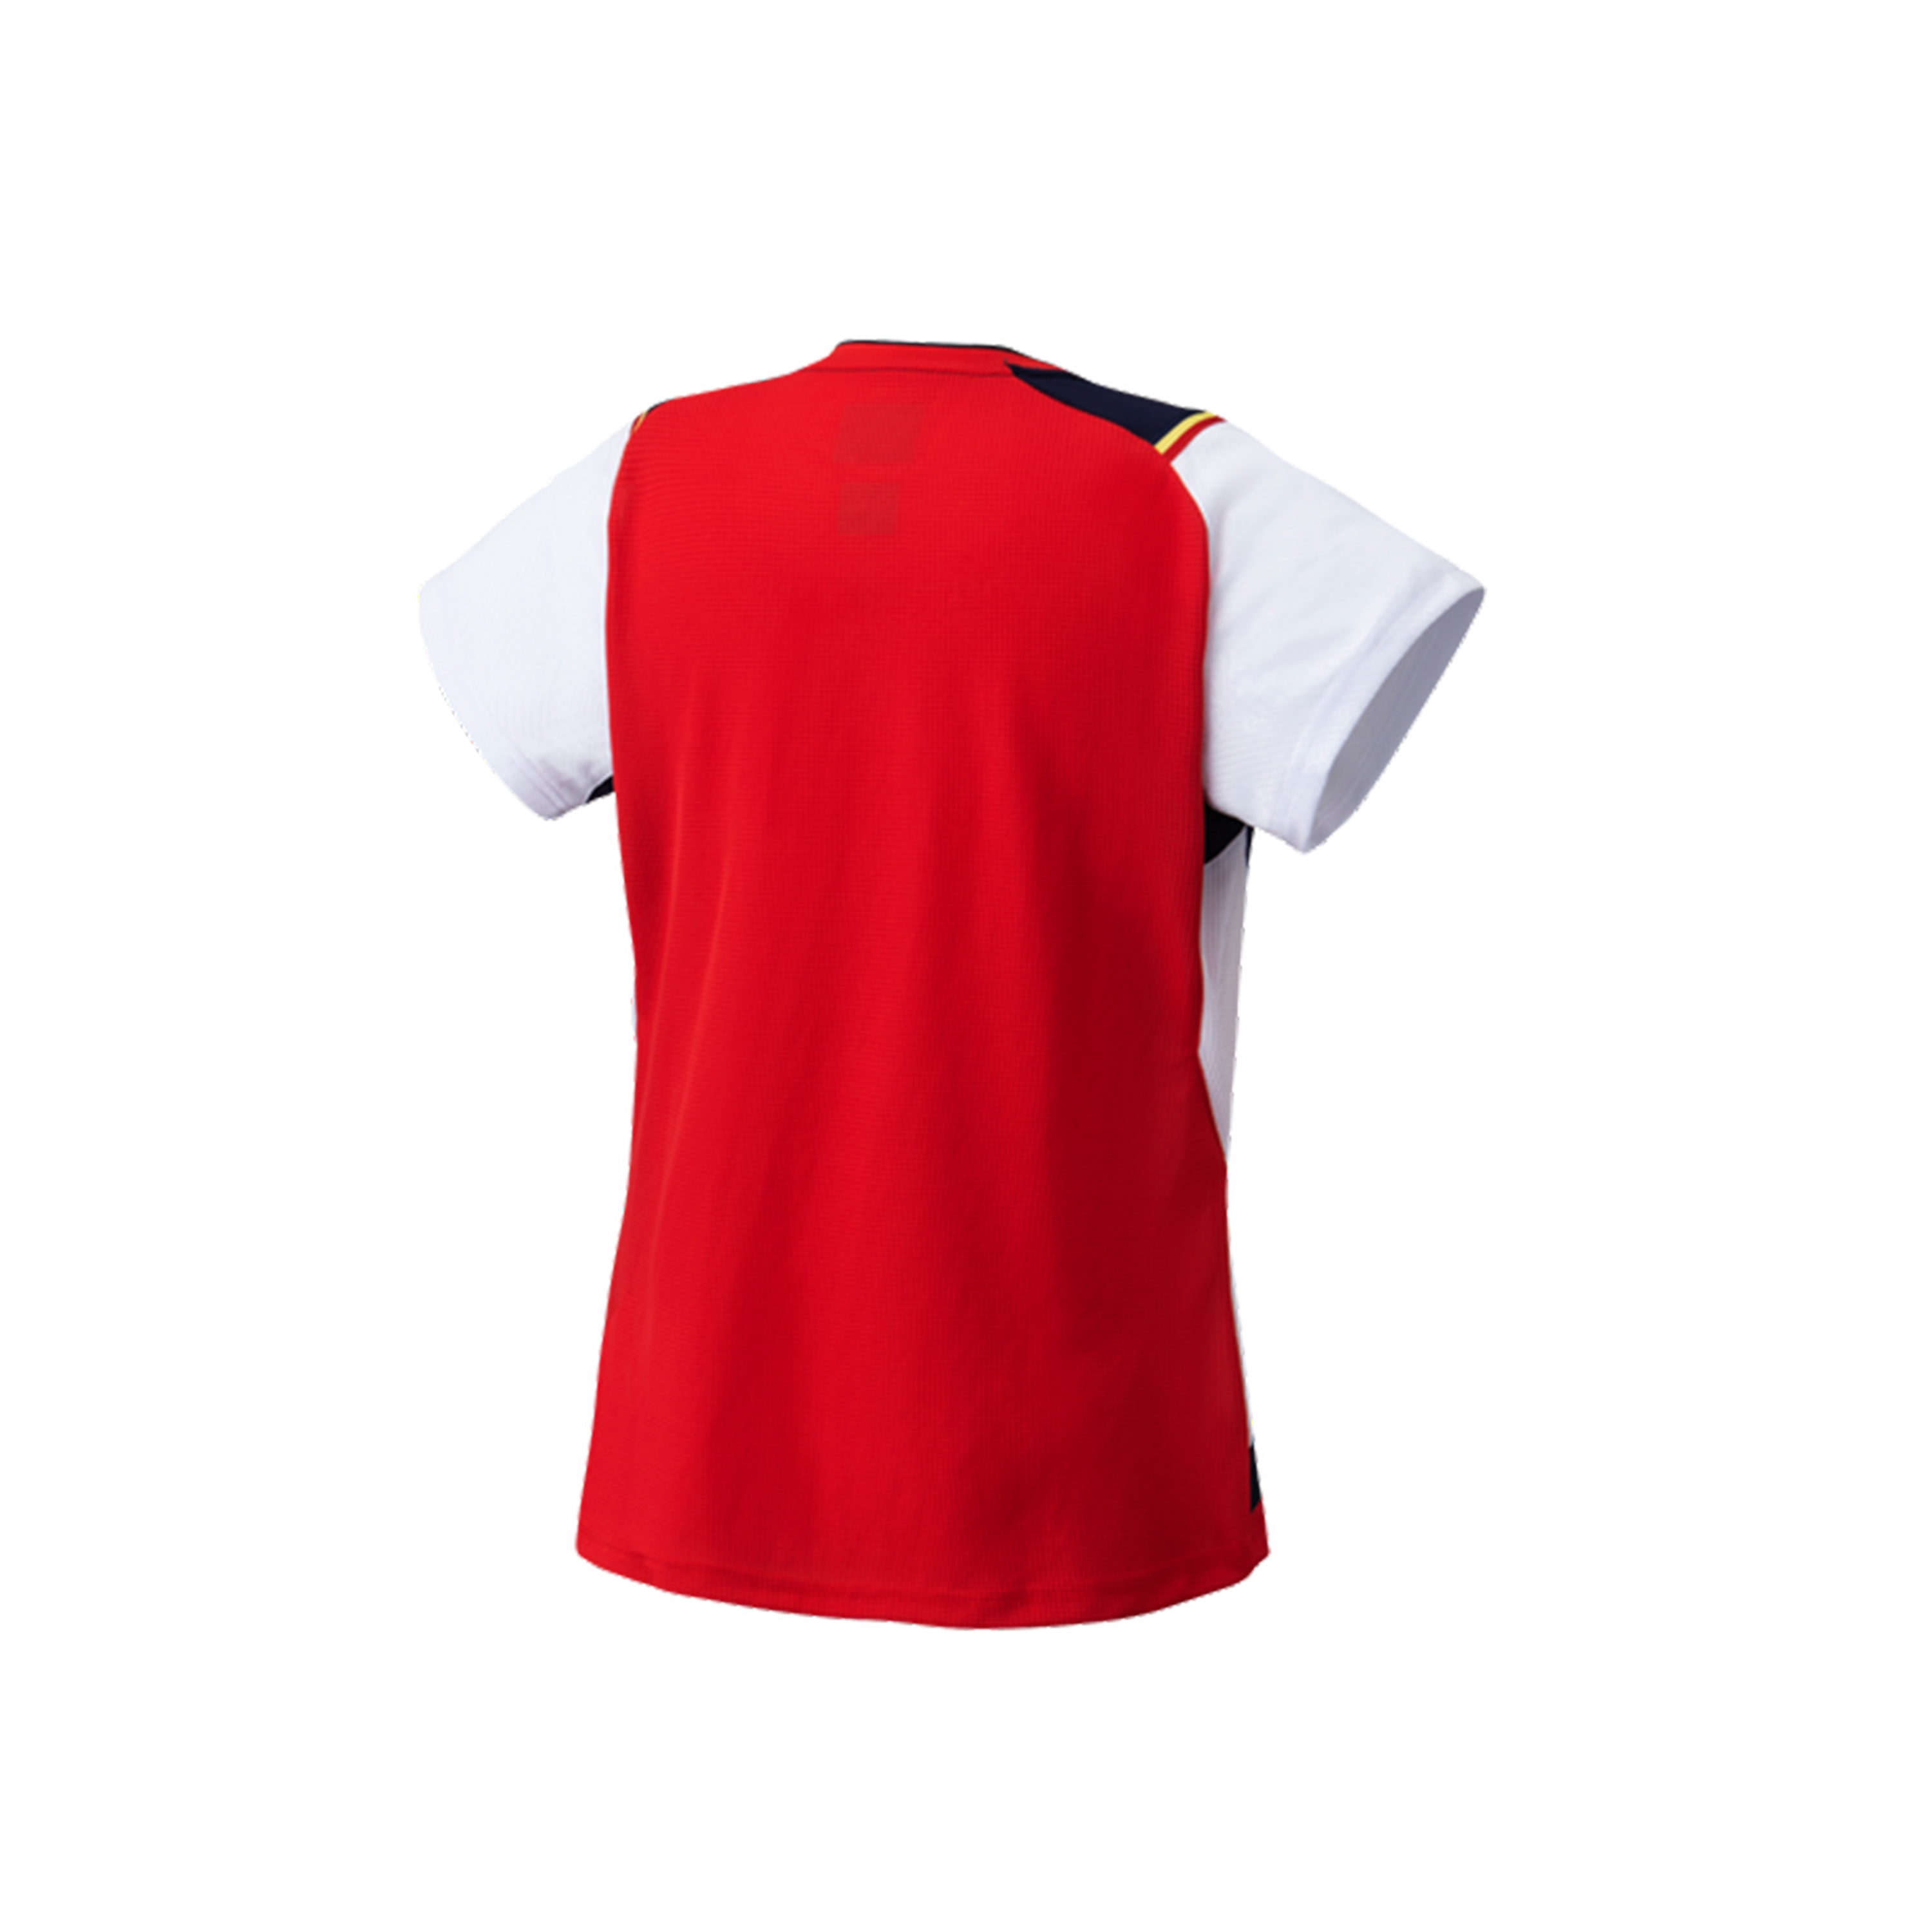 Yonex Premium Badminton/ Sports Shirt 20685 White WOMEN'S